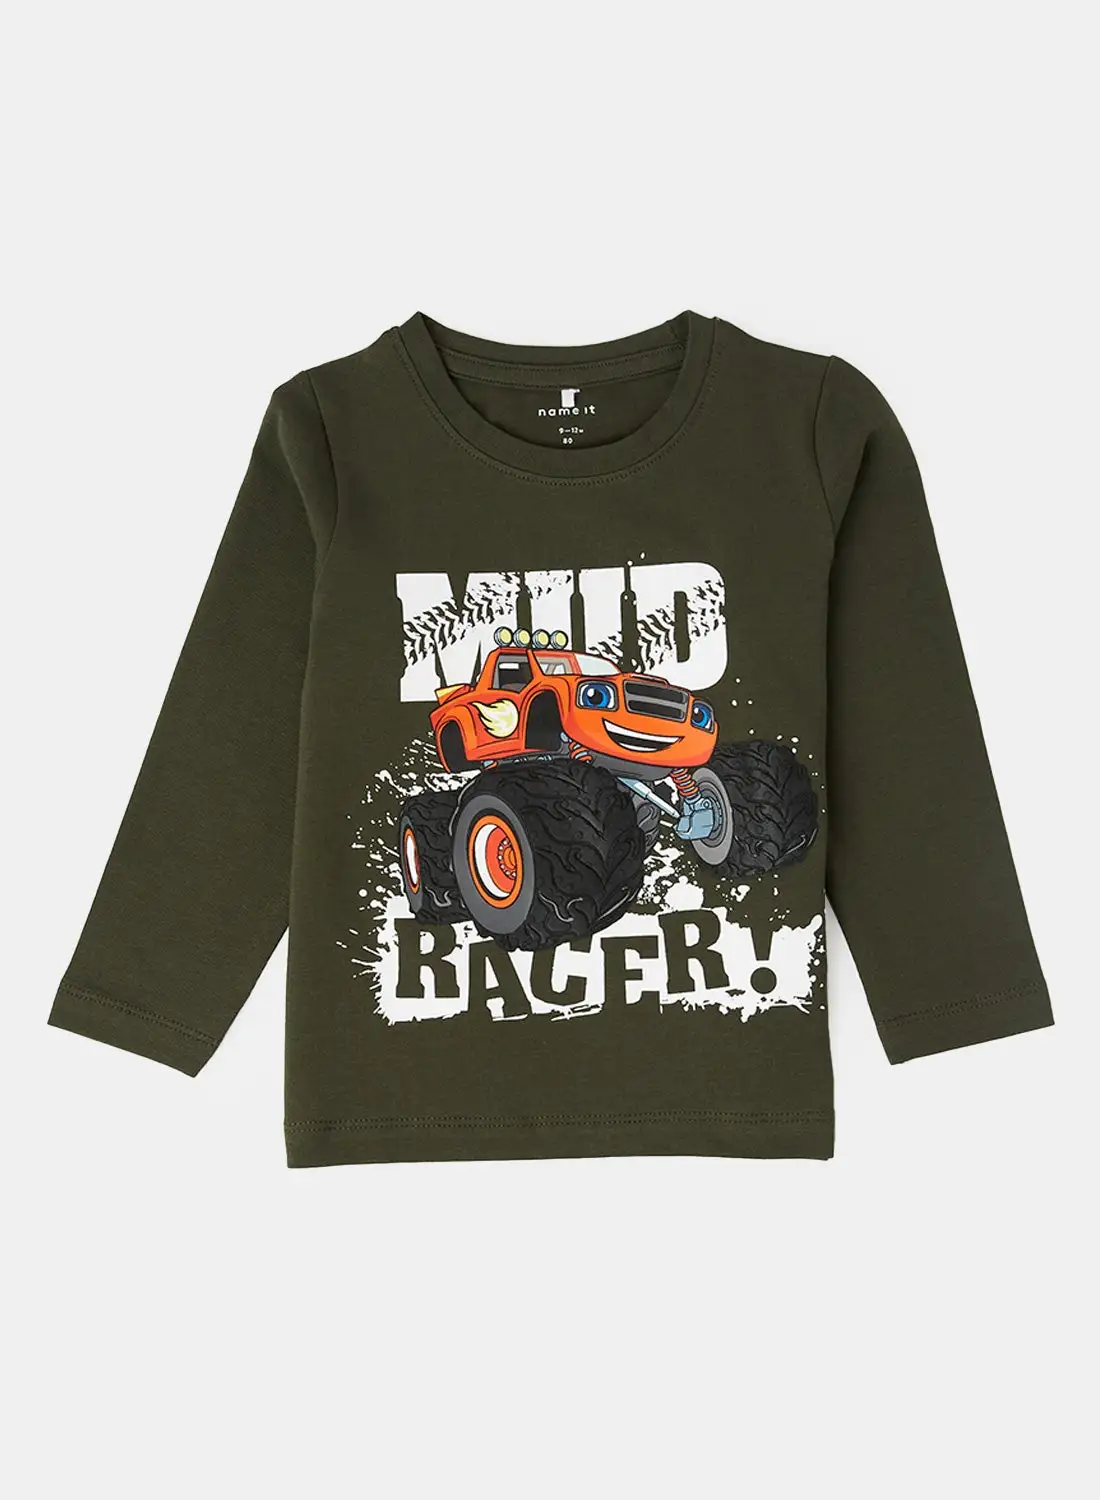 NAME IT Kids Mud Racer T-Shirt Green